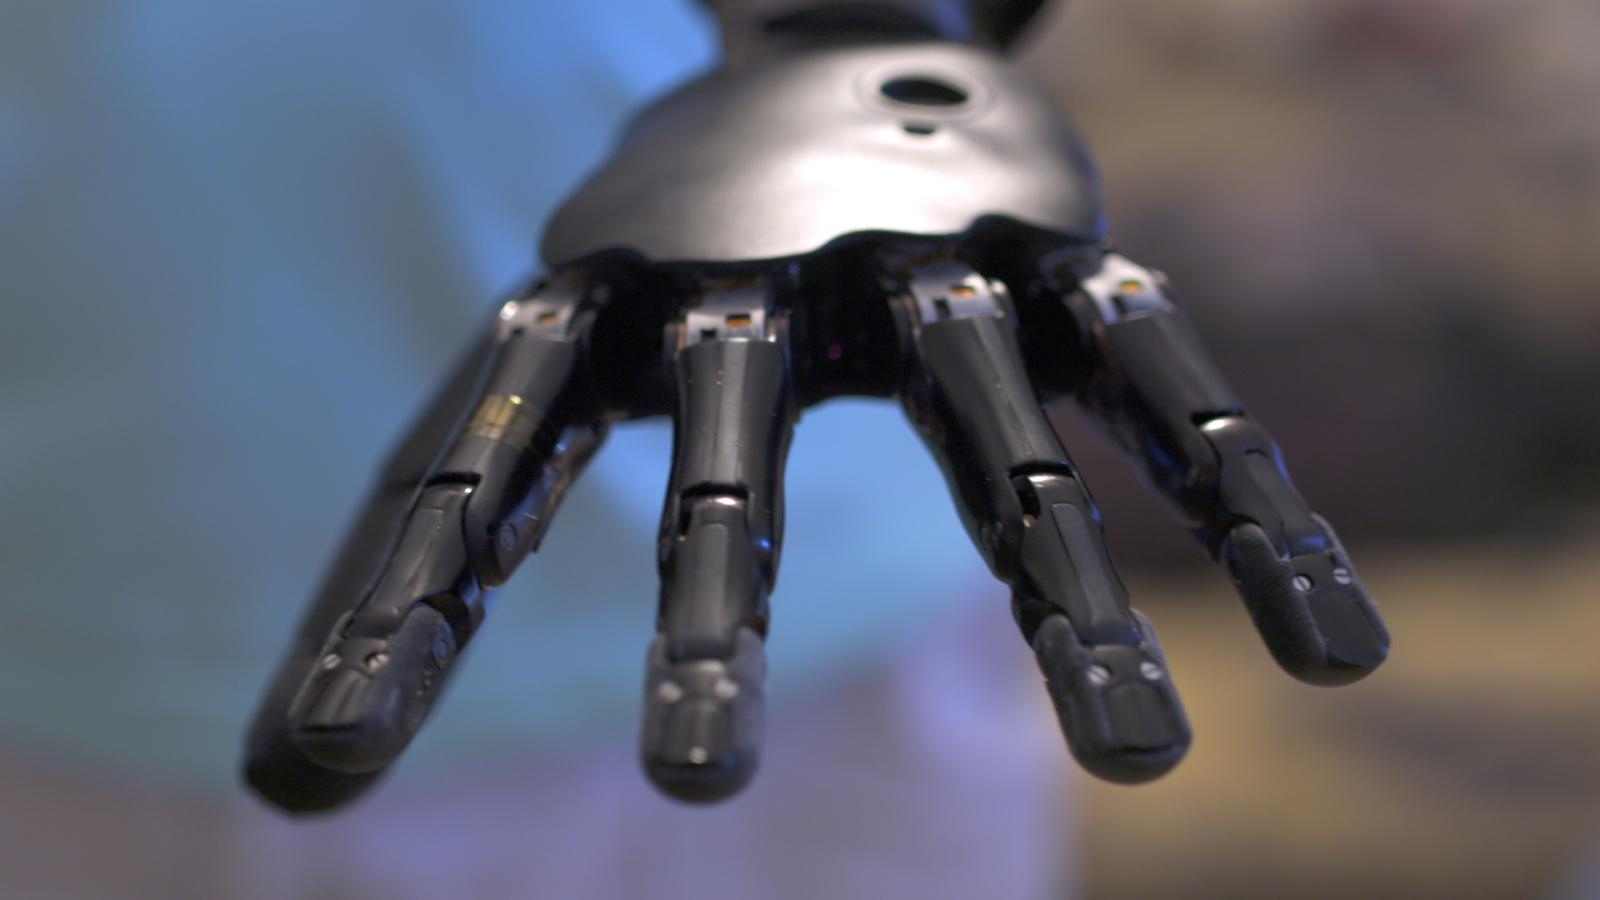 The most advanced robotic arm inqz.com